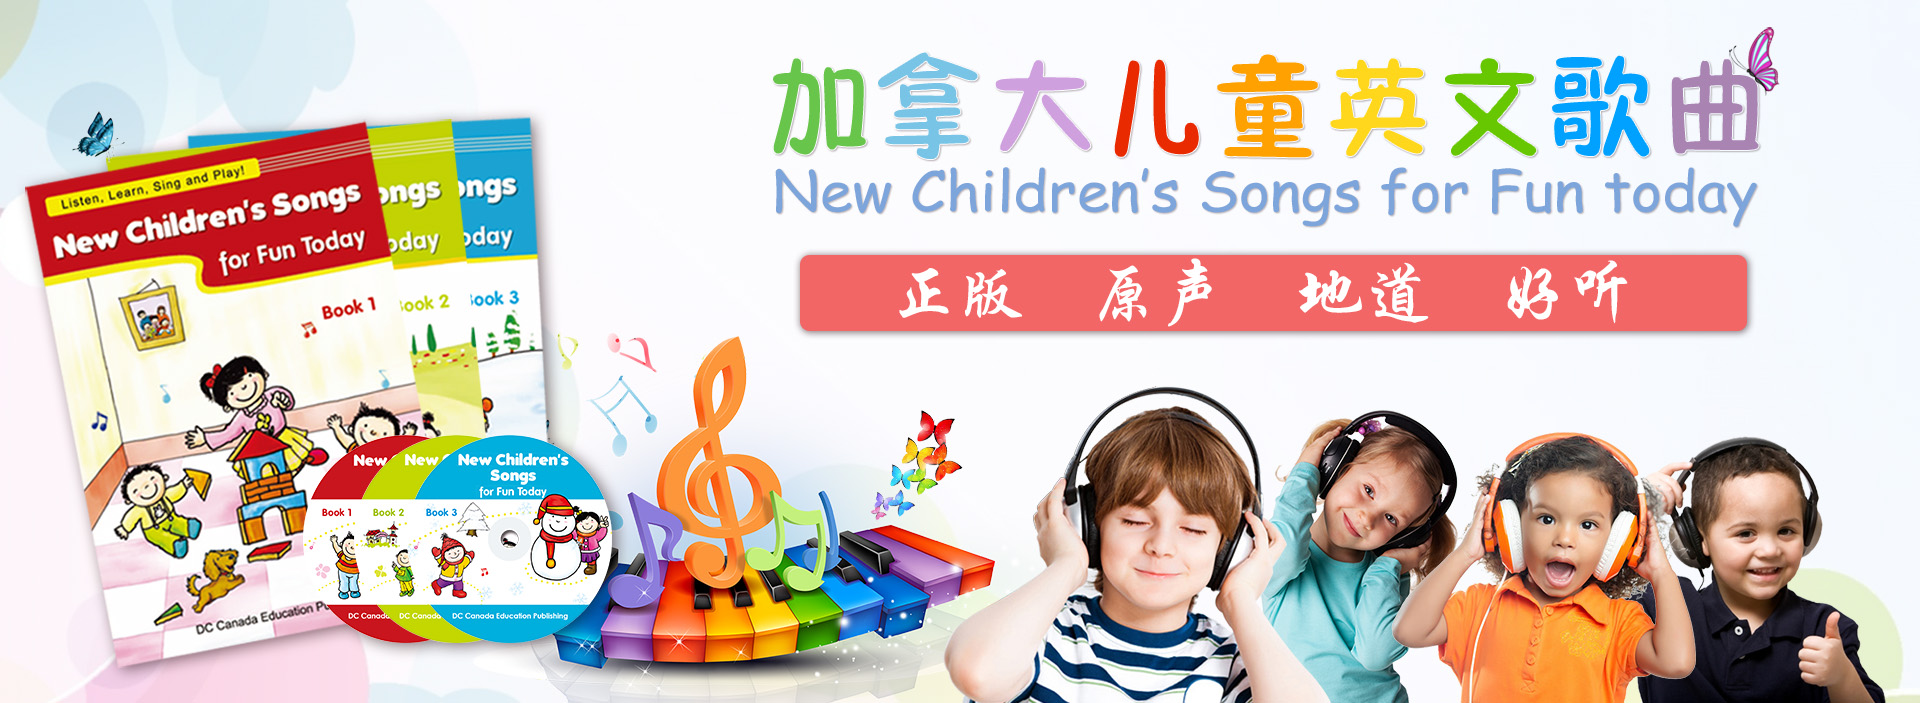 New Children's Songs  banner